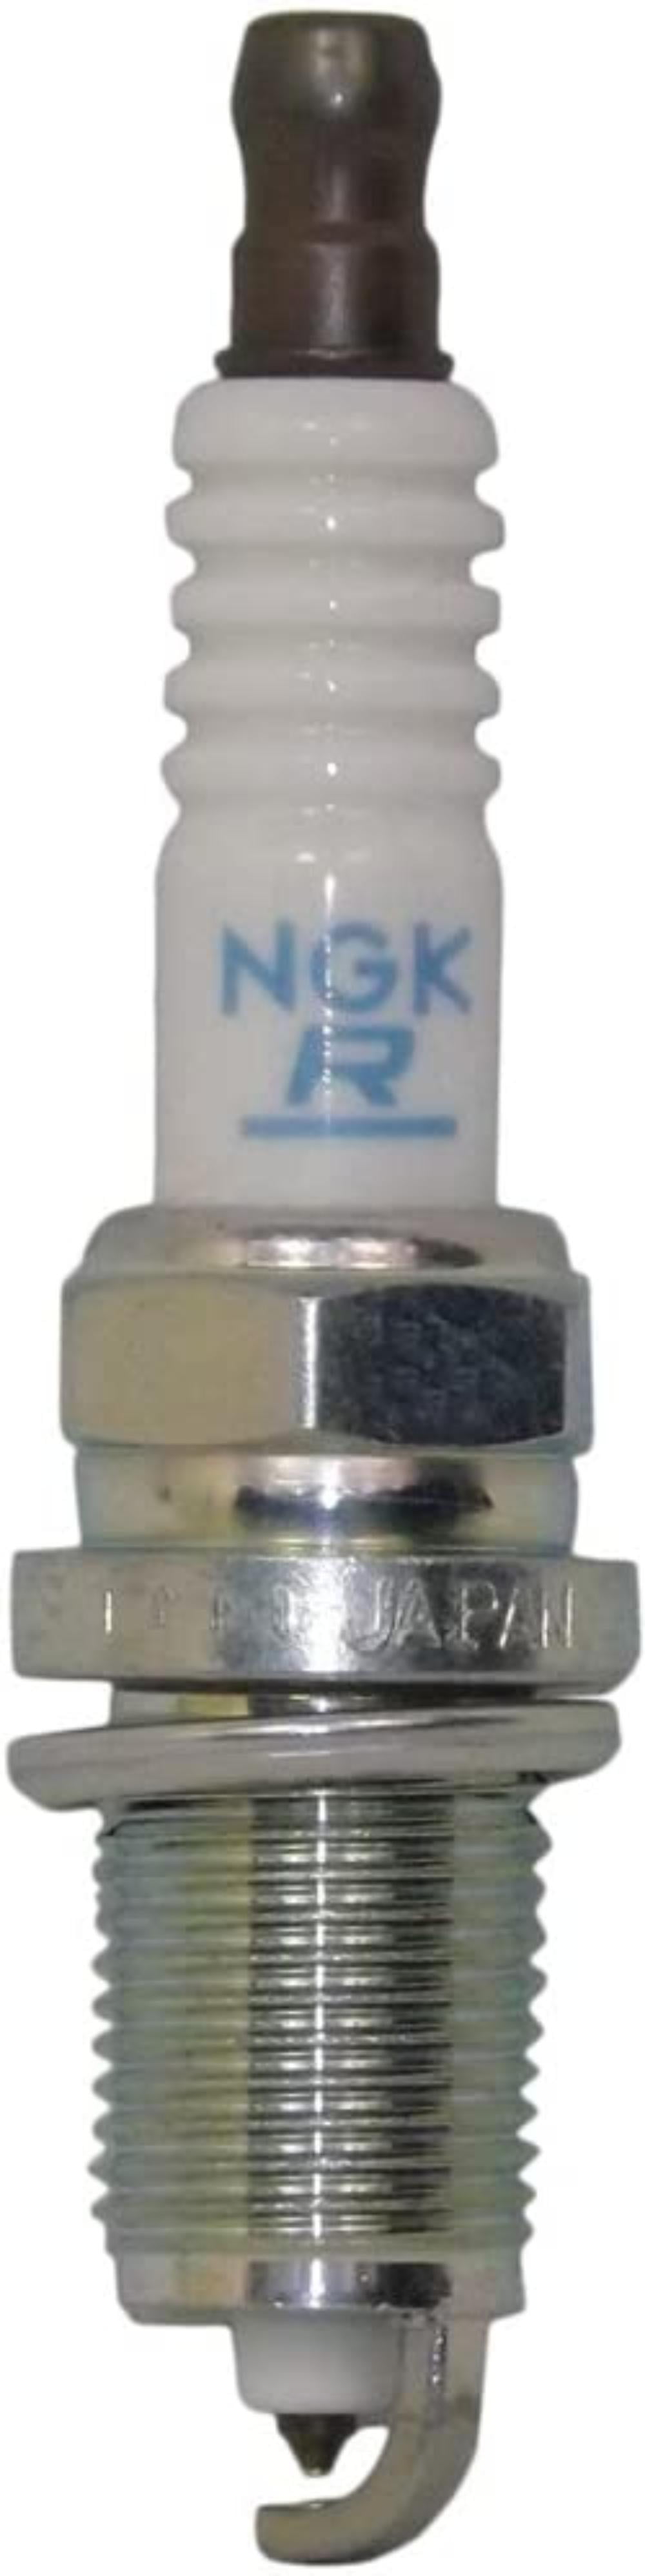 7743 PZFR5J-11 Laser Platinum Spark Plug NGK Pack of 1 